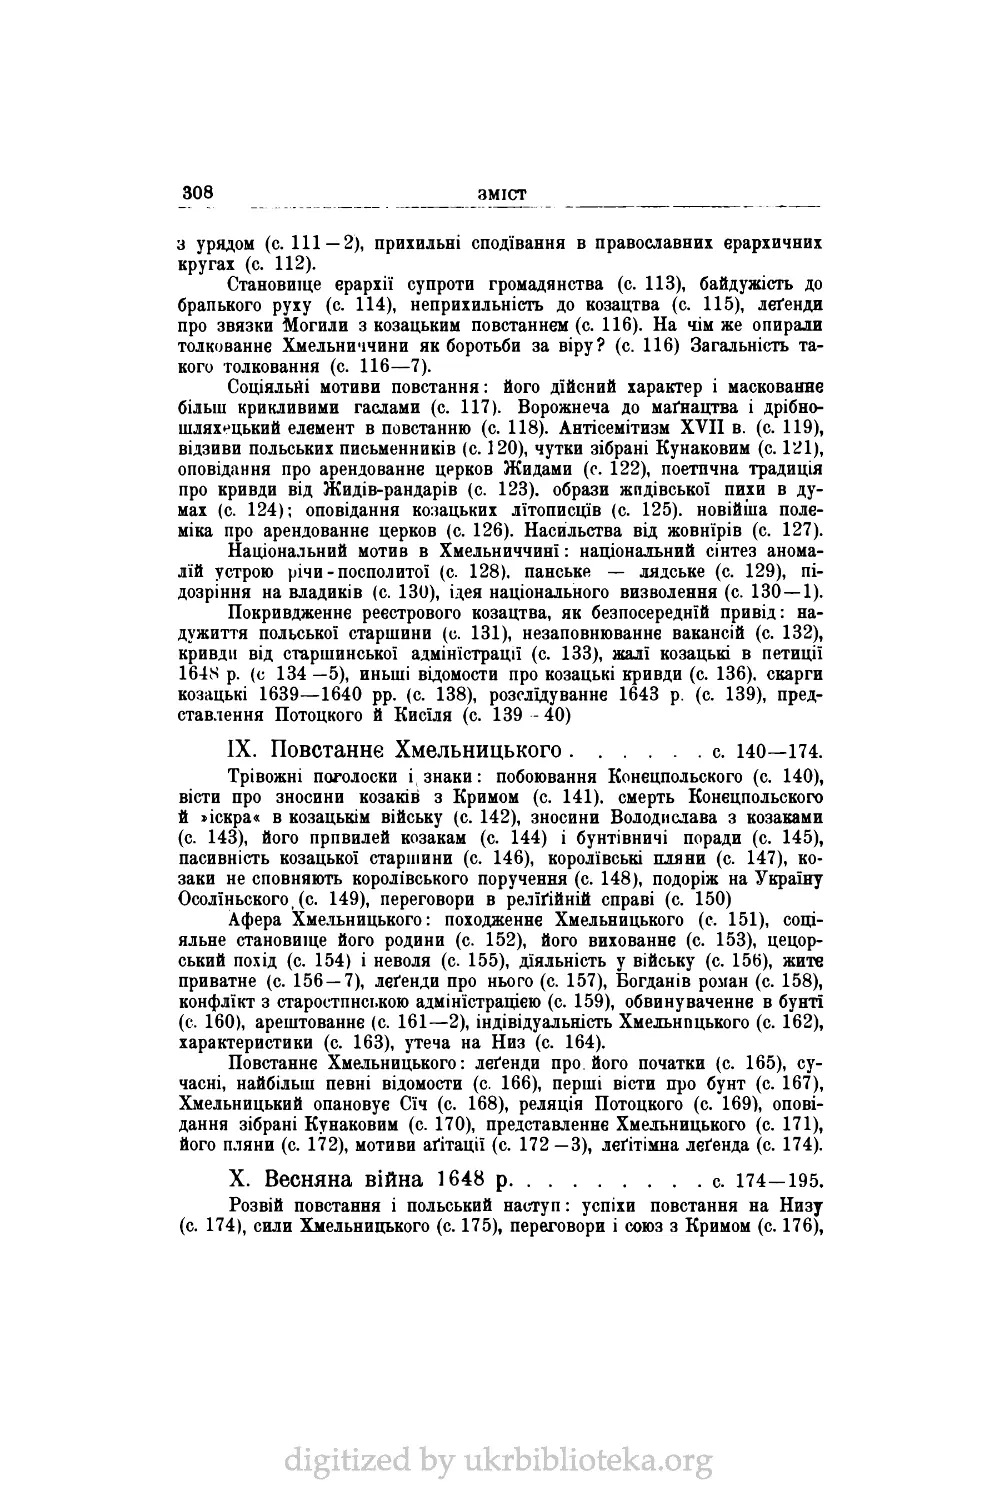 IX.	Повстаннє Хмельницького	с. 140—174.
X.	Весняна війна 1648 р	с. 174—195.